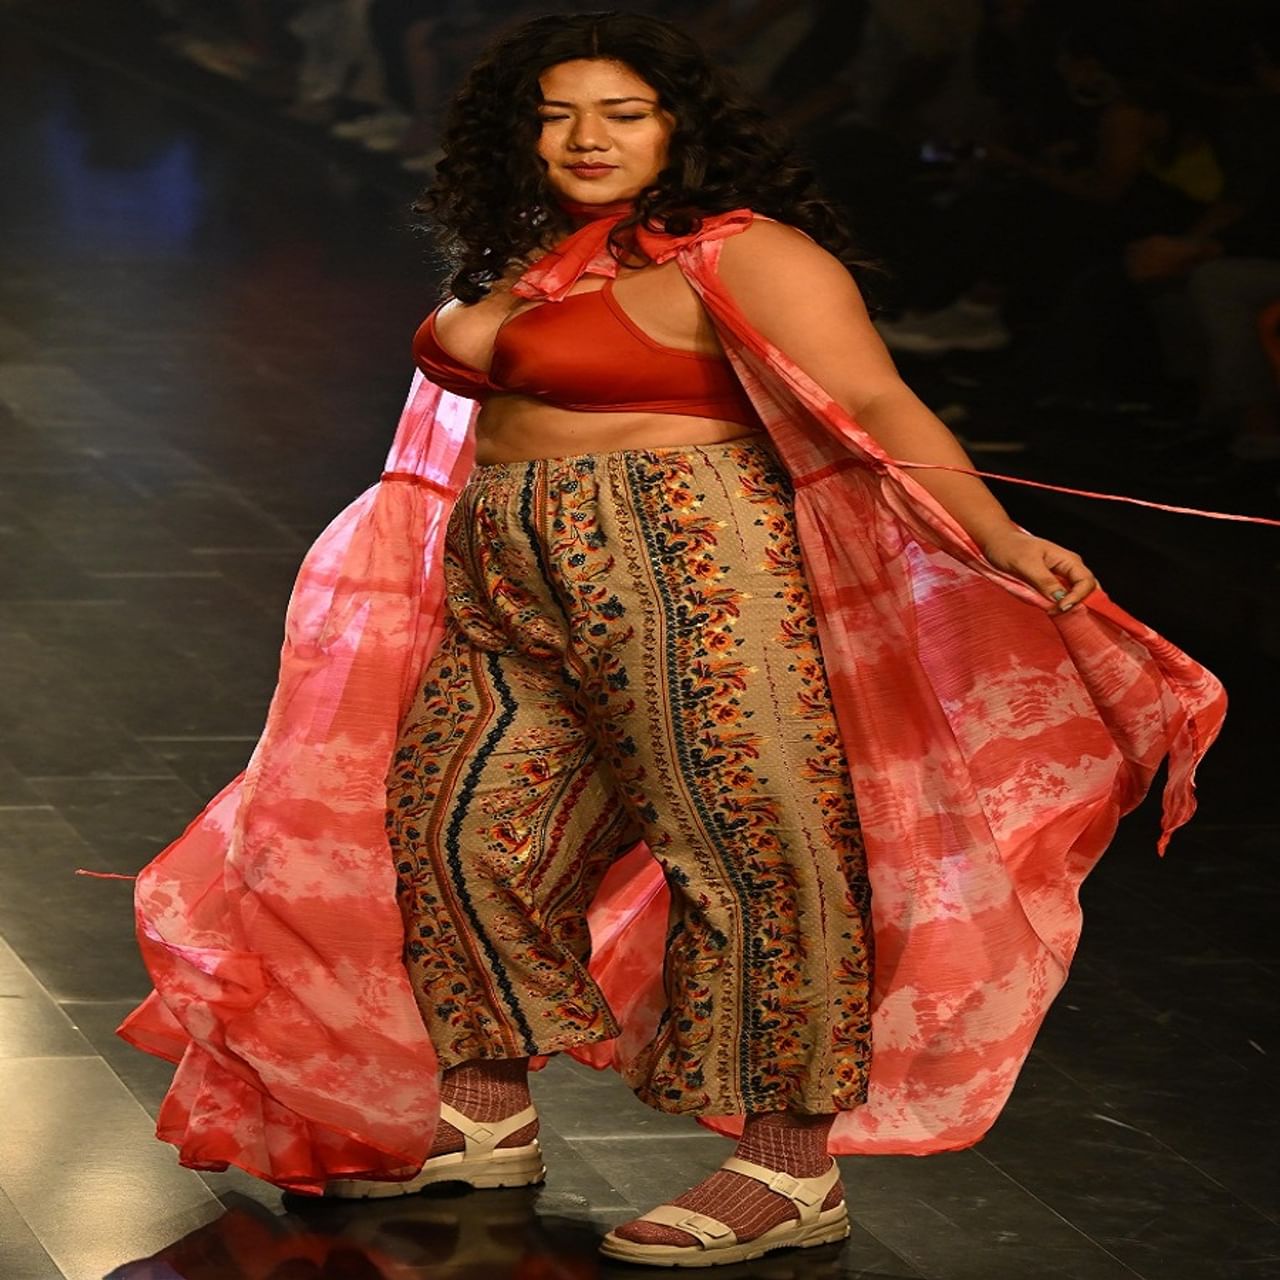 नवी दिल्लीत लक्ष्मी फॅशन वीकमध्ये बॉलिवूड अभिनेत्री कंगना रणौतने डिझायनर वरुण चक्किलमसाठी रॅम्प वॉक केला.